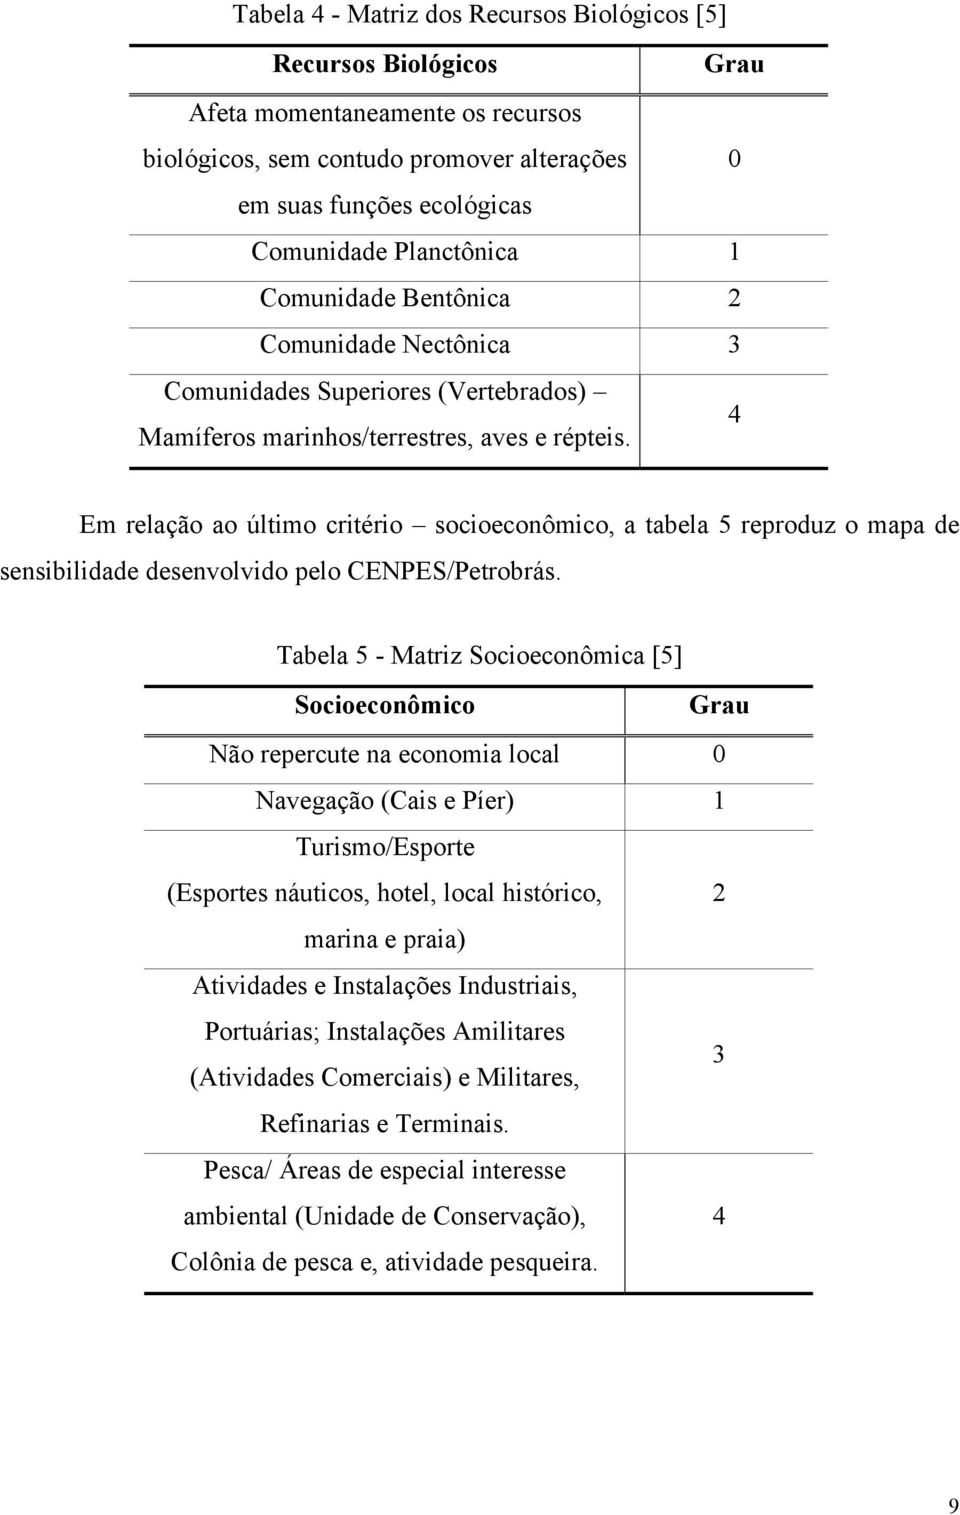 4 Em relação ao último critério socioeconômico, a tabela 5 reproduz o mapa de sensibilidade desenvolvido pelo CENPES/Petrobrás.